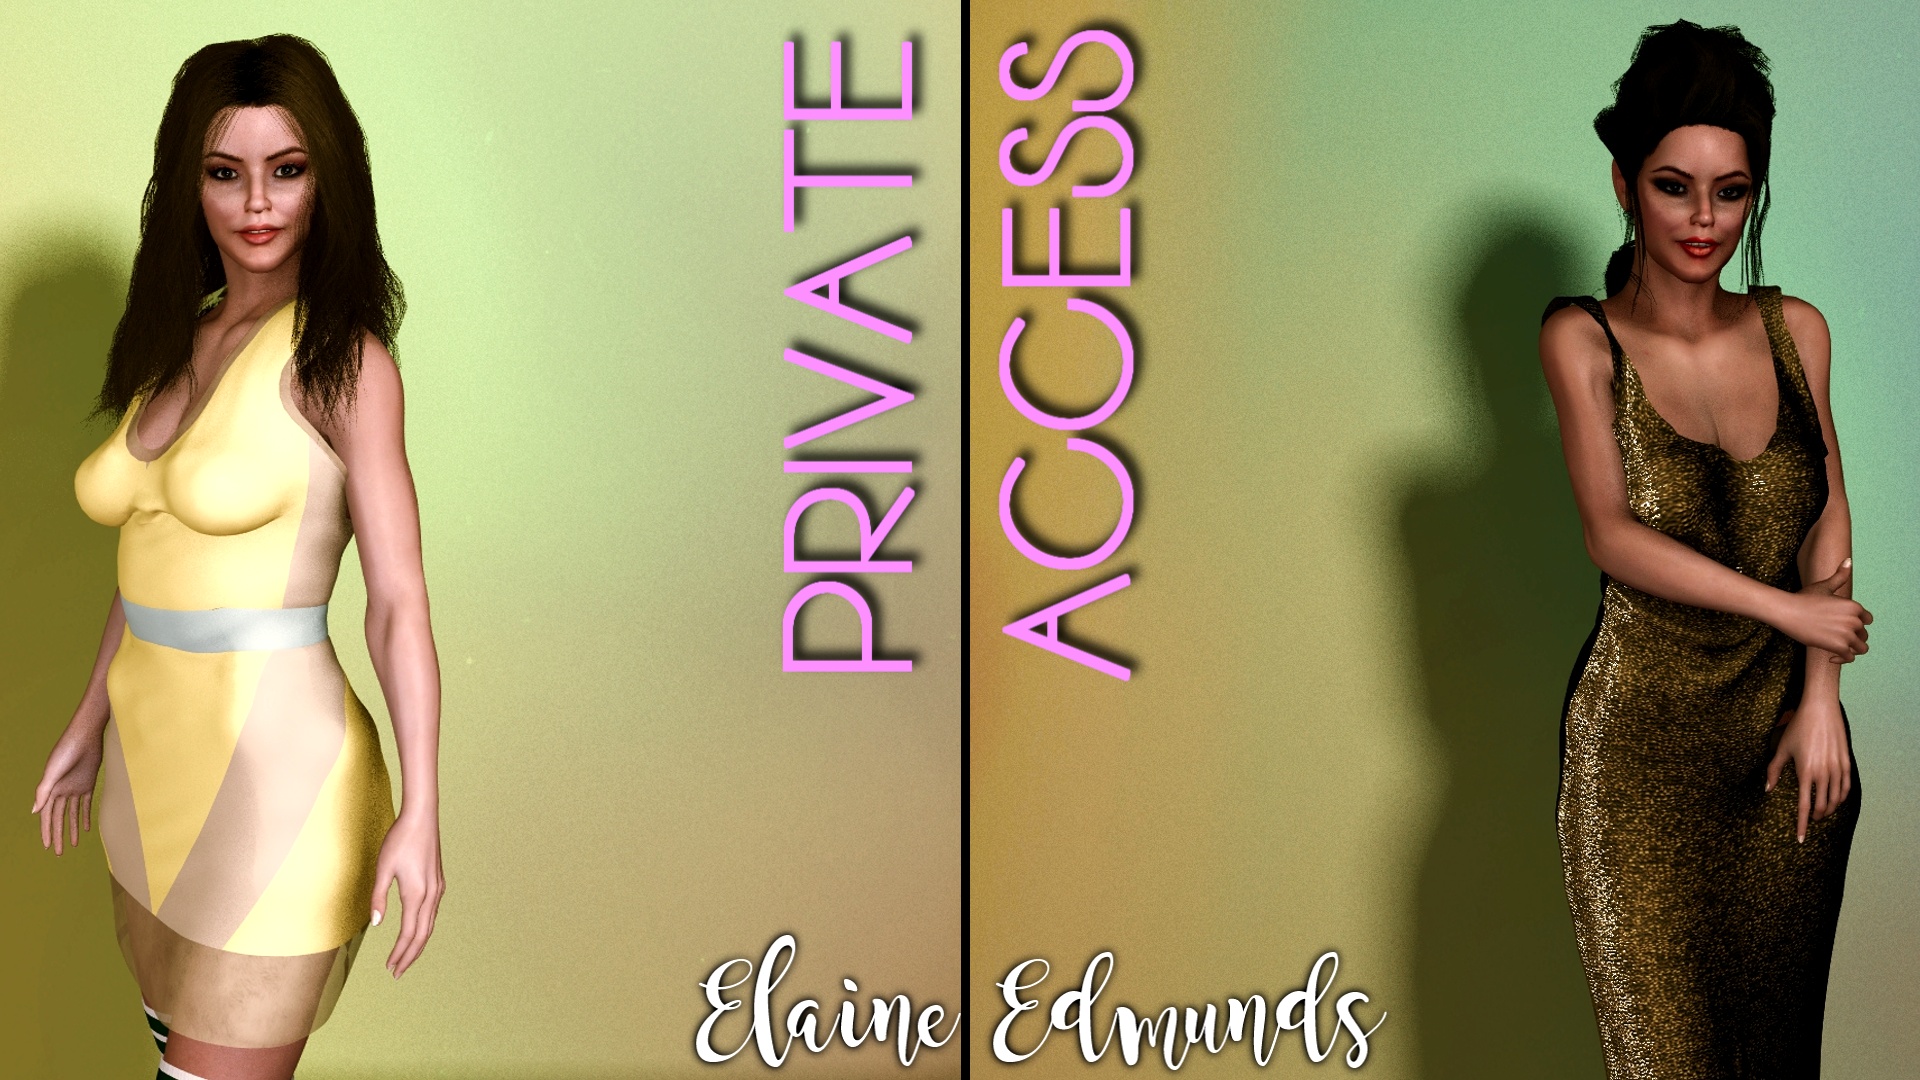 Private Access Promo Pic 5 of 7